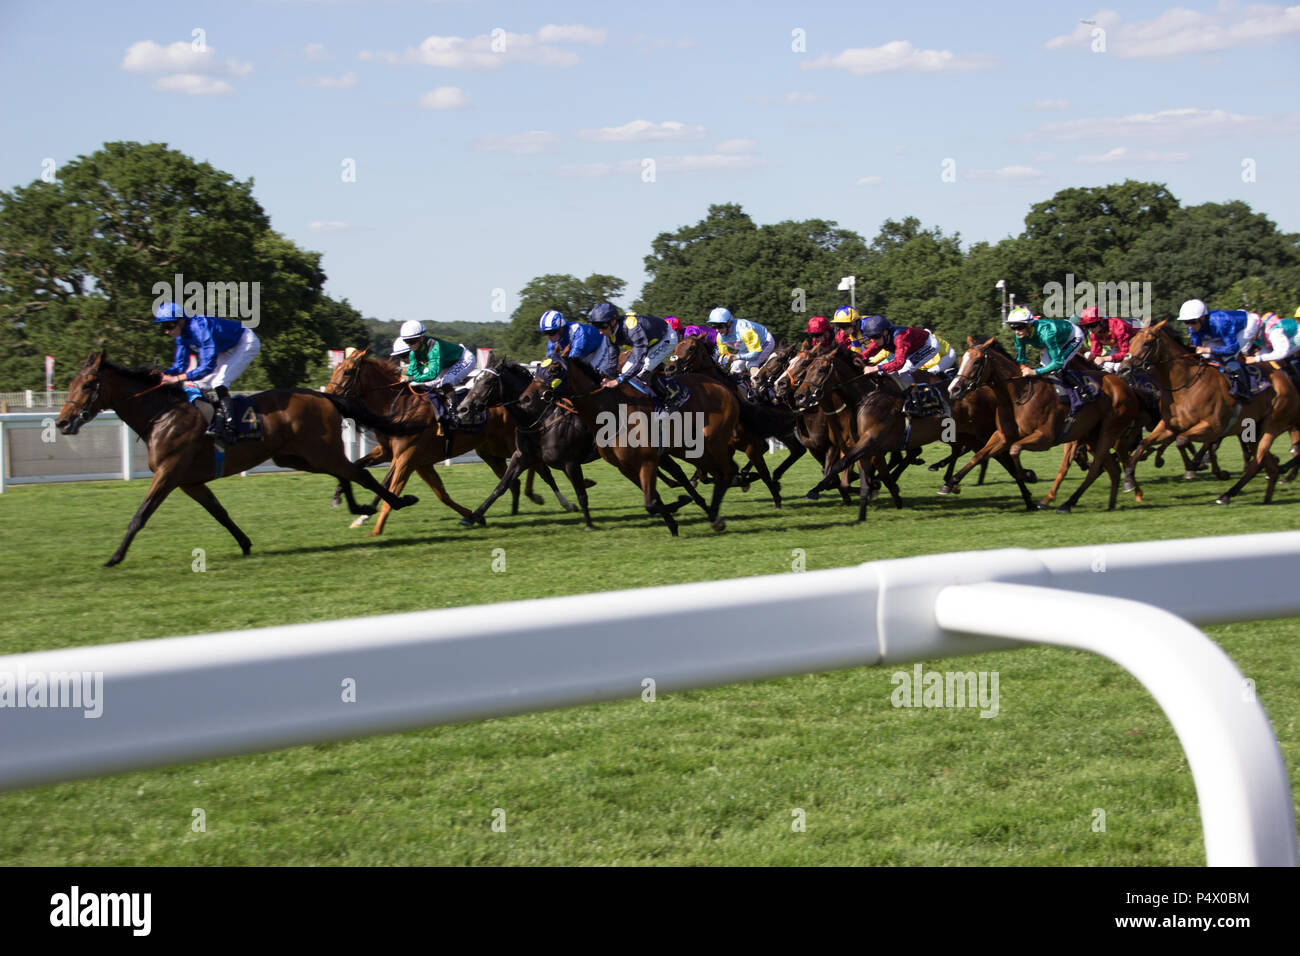 Horses racing on track at Royal Ascot Stock Photo